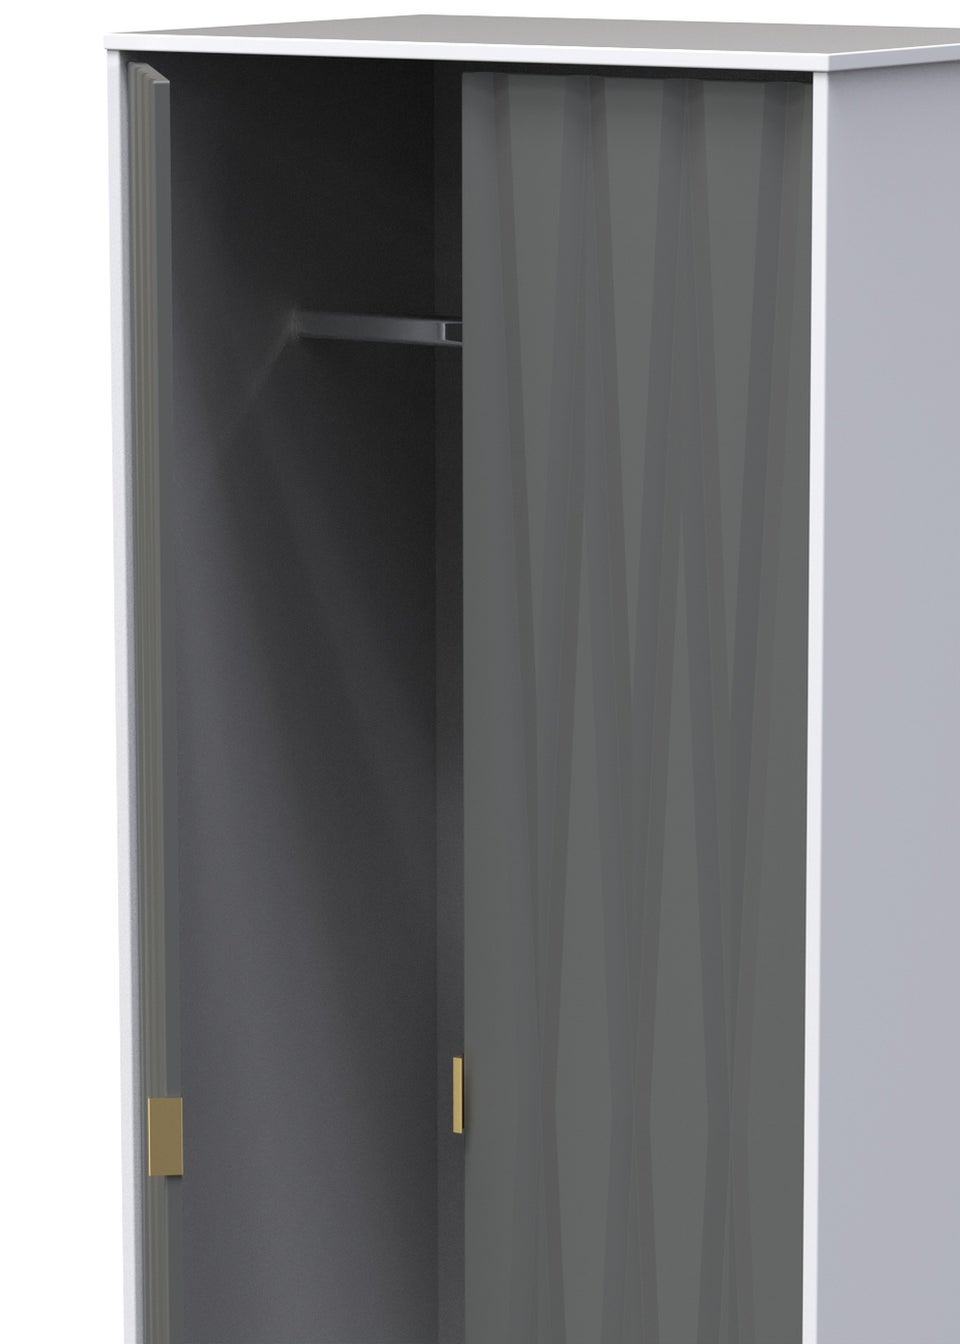 Swift Prism 2 Door Wardrobe (201.5cm x 76.5cm x 53cm)